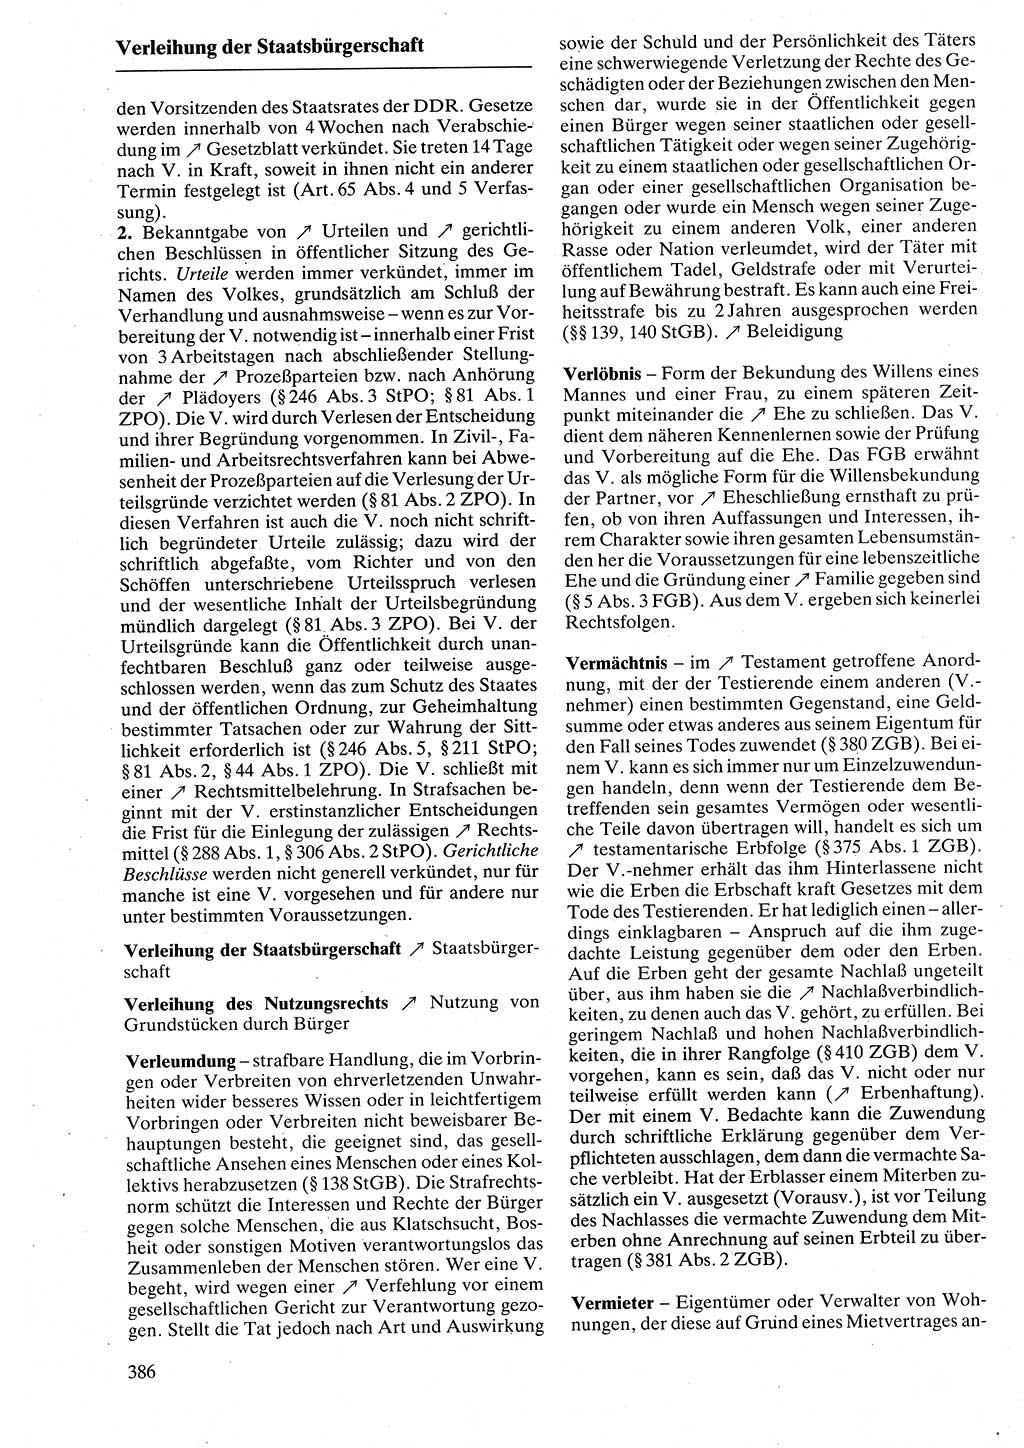 Rechtslexikon [Deutsche Demokratische Republik (DDR)] 1988, Seite 386 (Rechtslex. DDR 1988, S. 386)